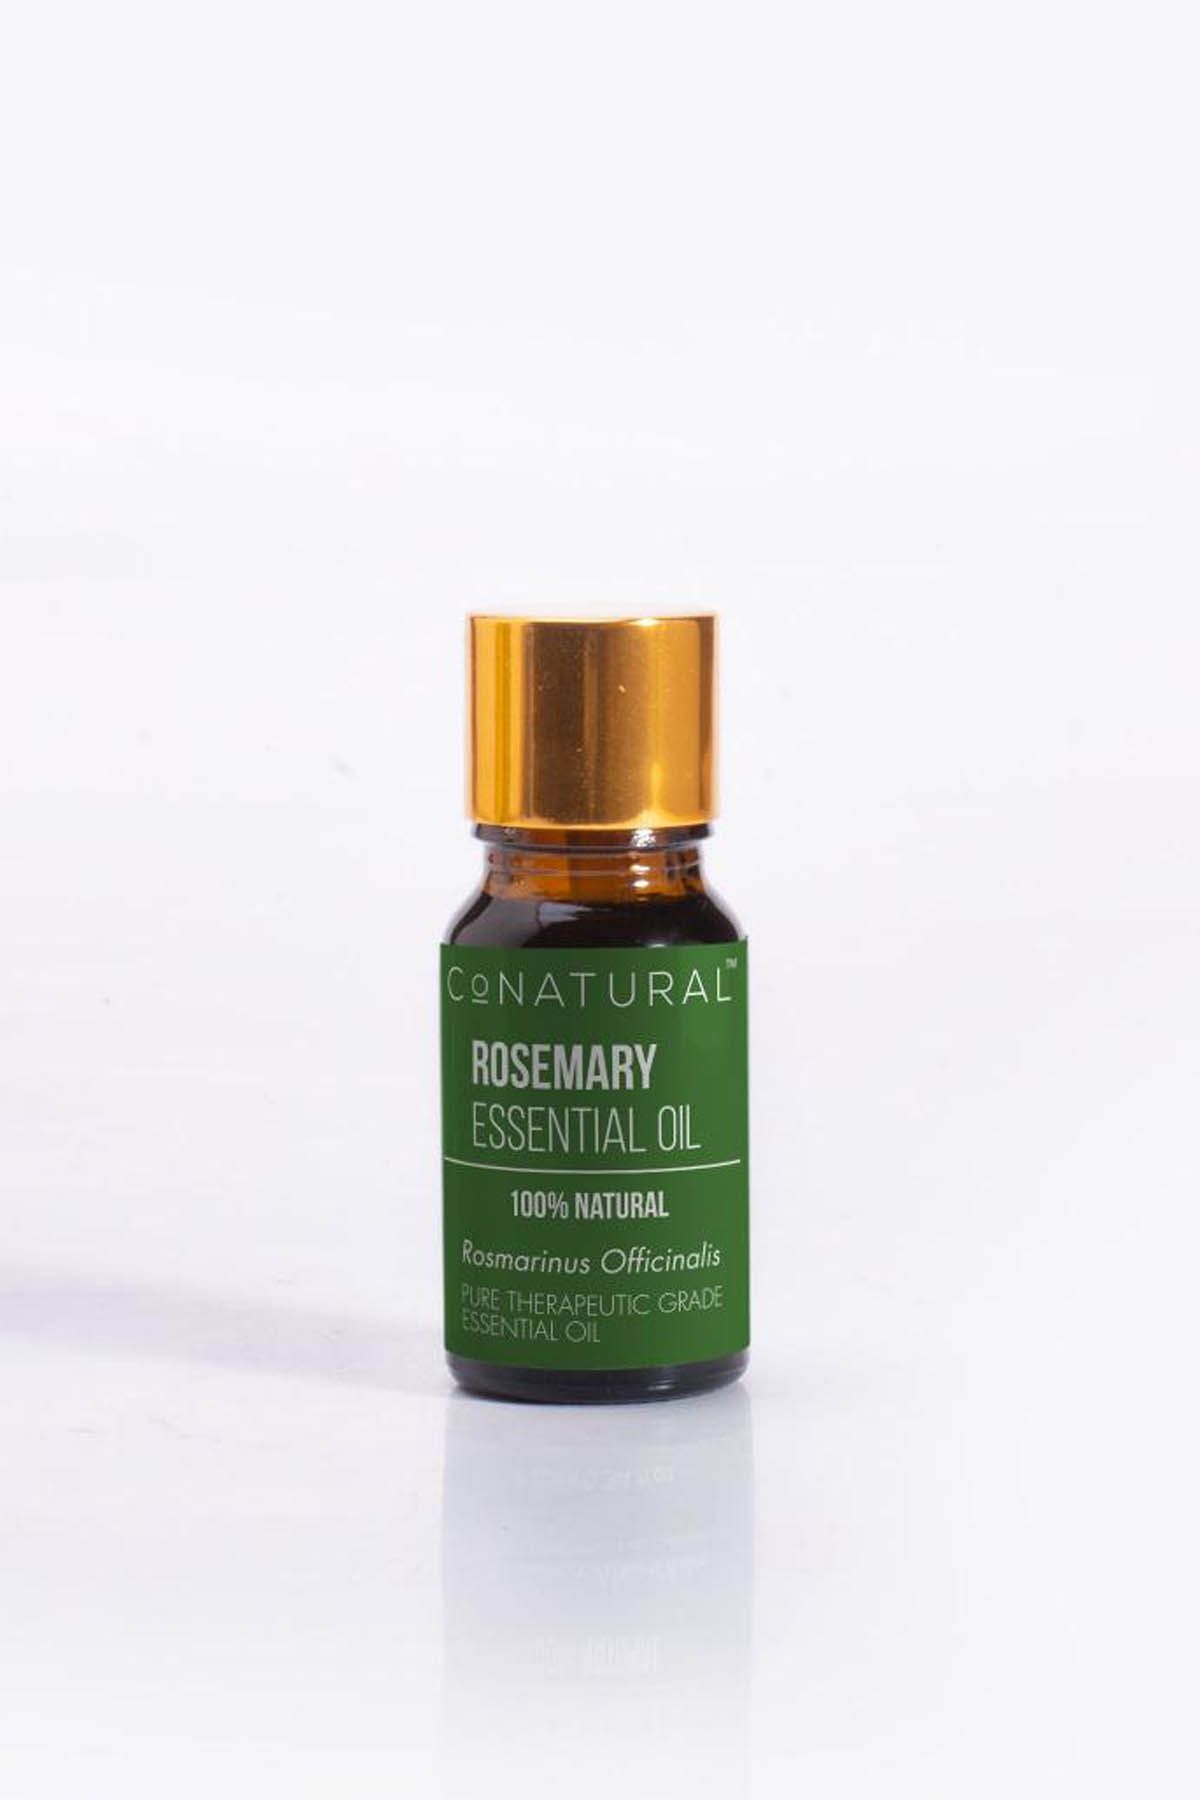 CoNATURAL Rosemary Essential Oil Unisex Oils